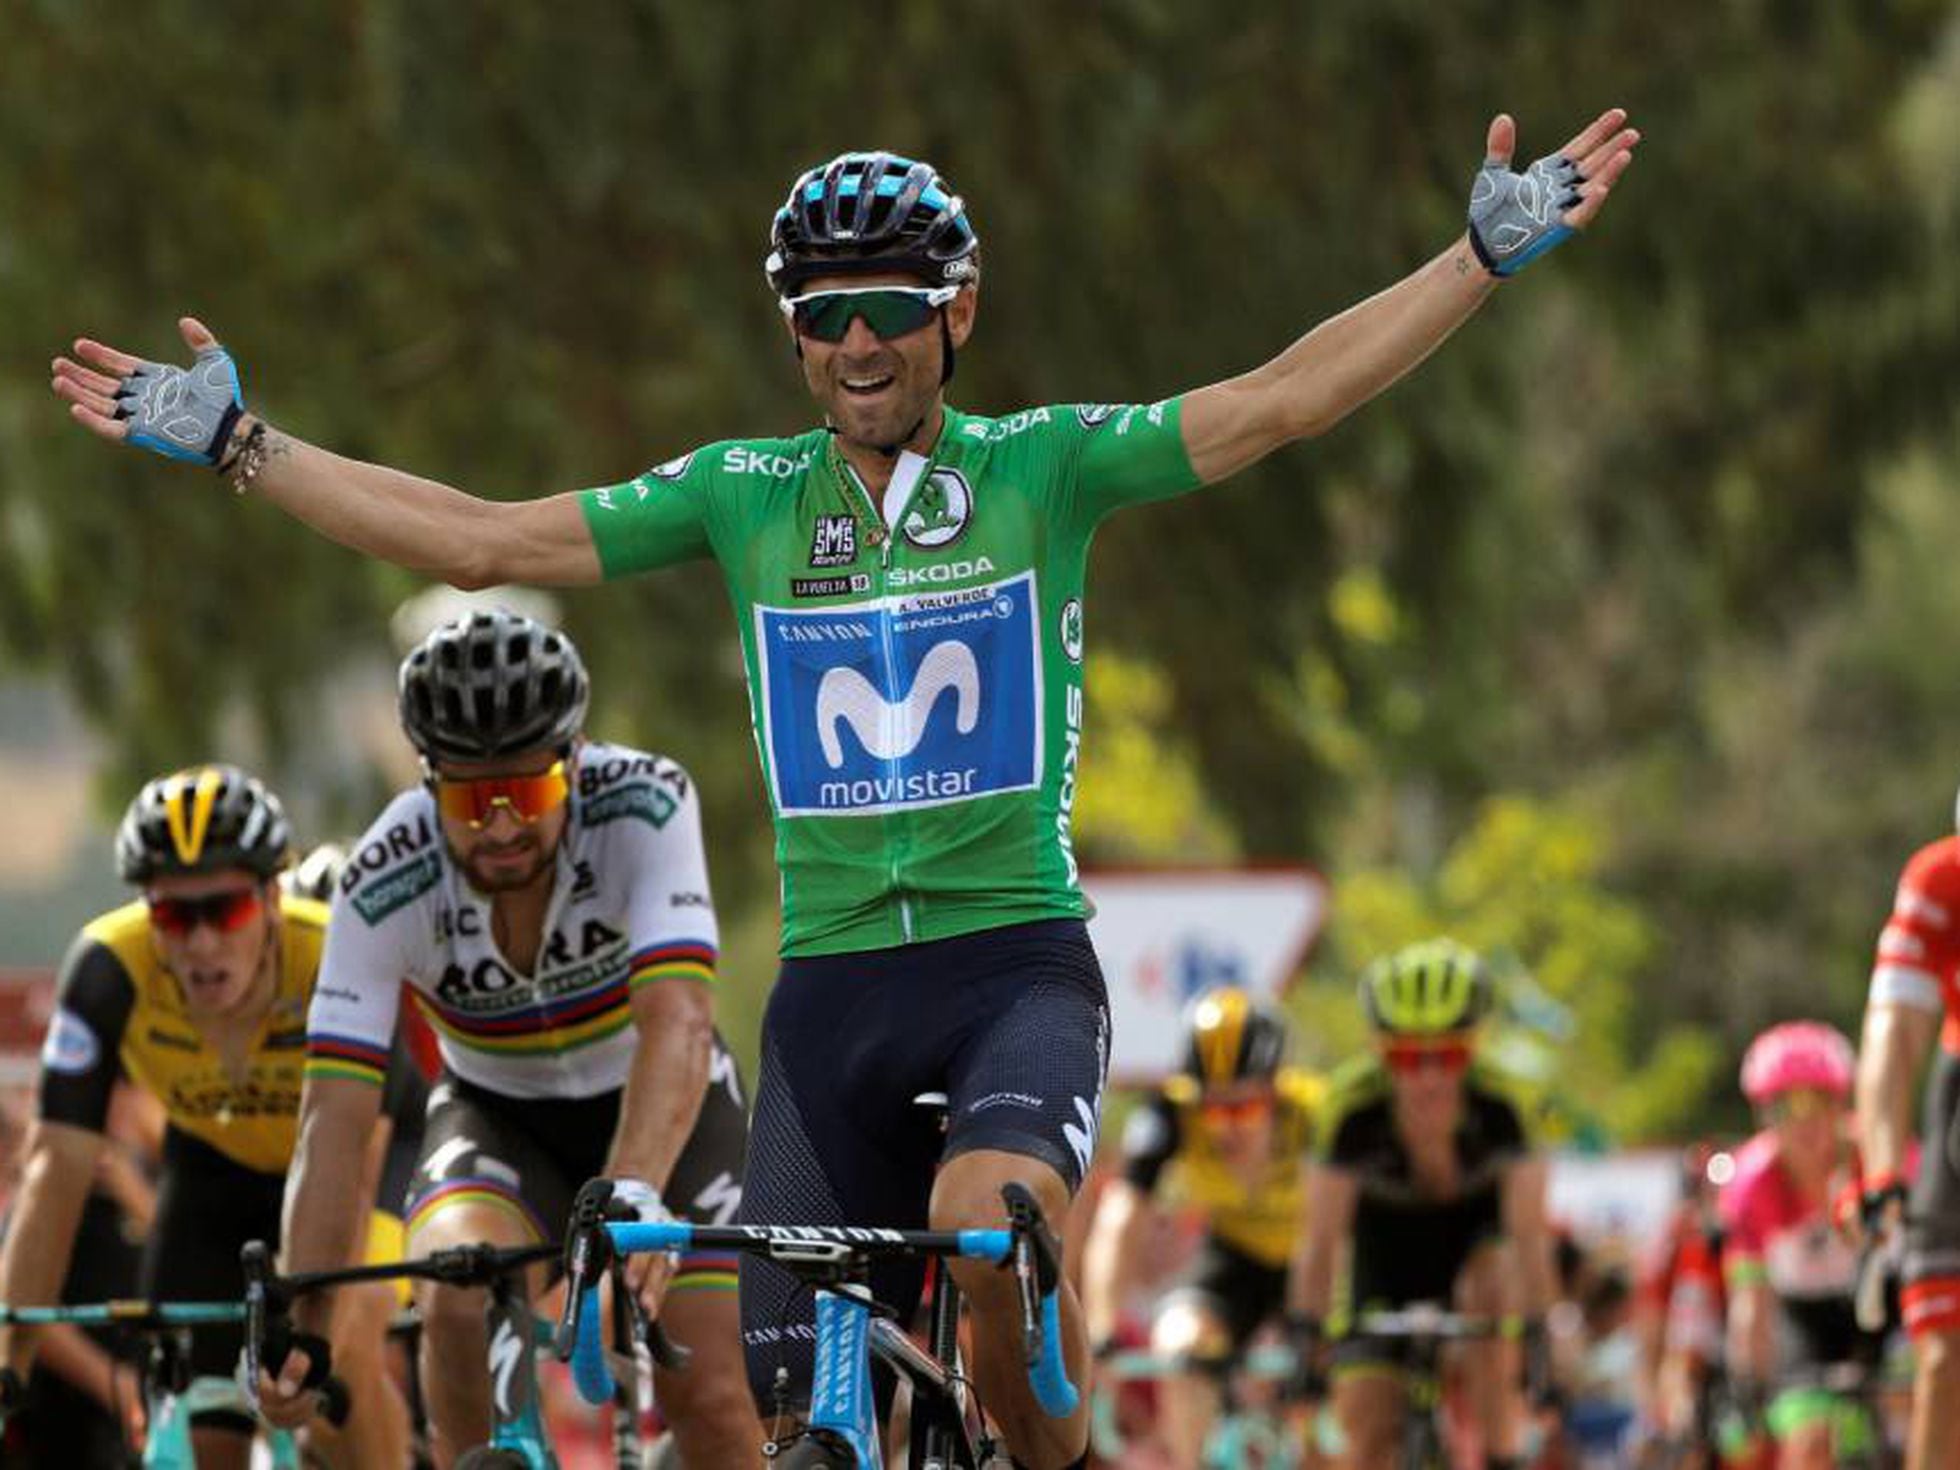 Surrey desencadenar fingir Vuelta a España: Ni Sagan le respira a Valverde, que le derrota en Almadén  | Deportes | EL PAÍS